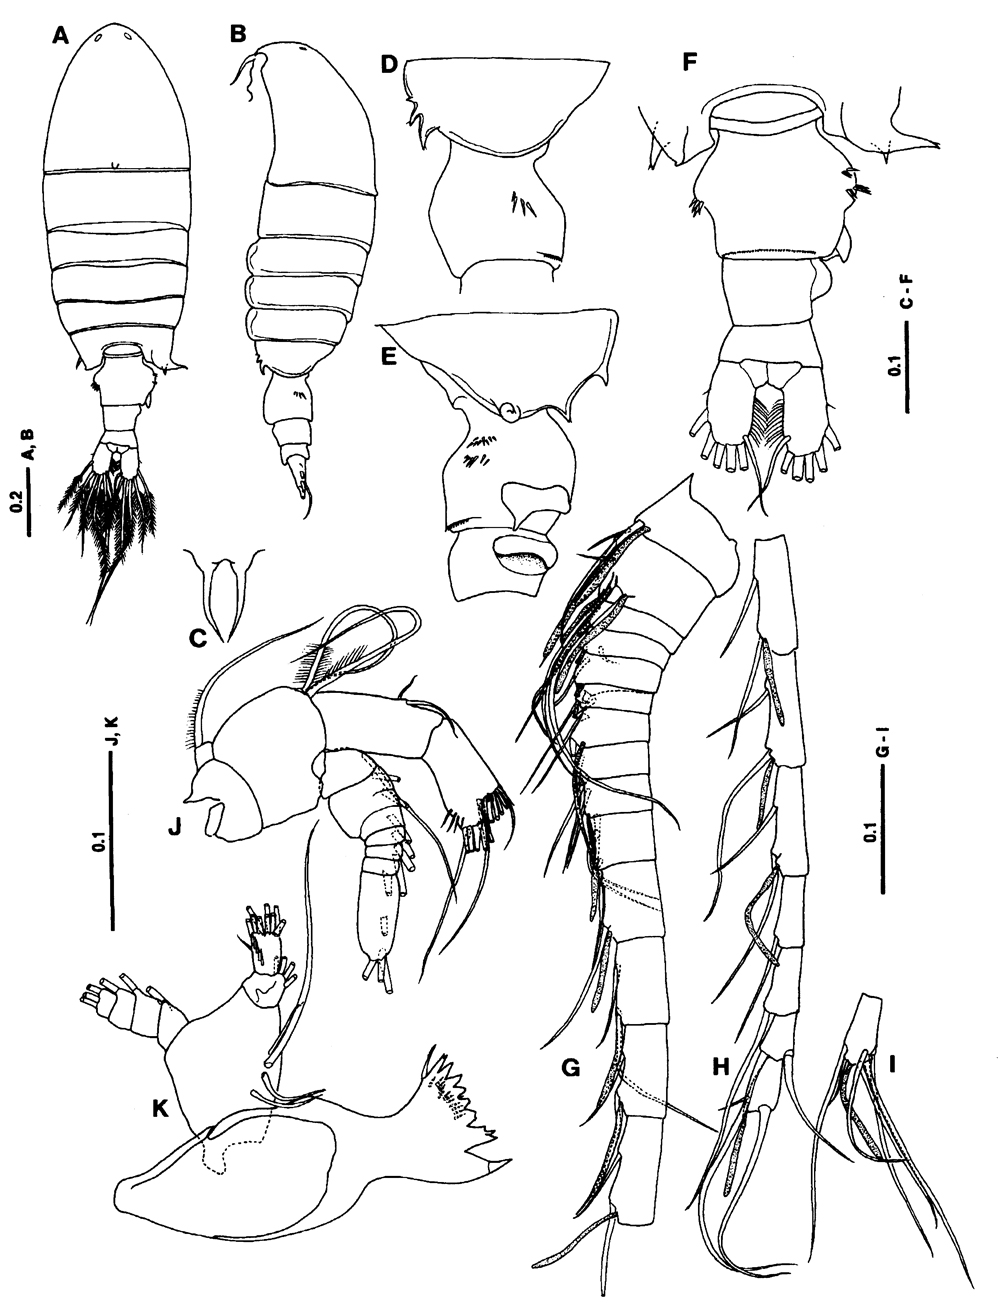 Espce Centropages brevifurcus - Planche 3 de figures morphologiques